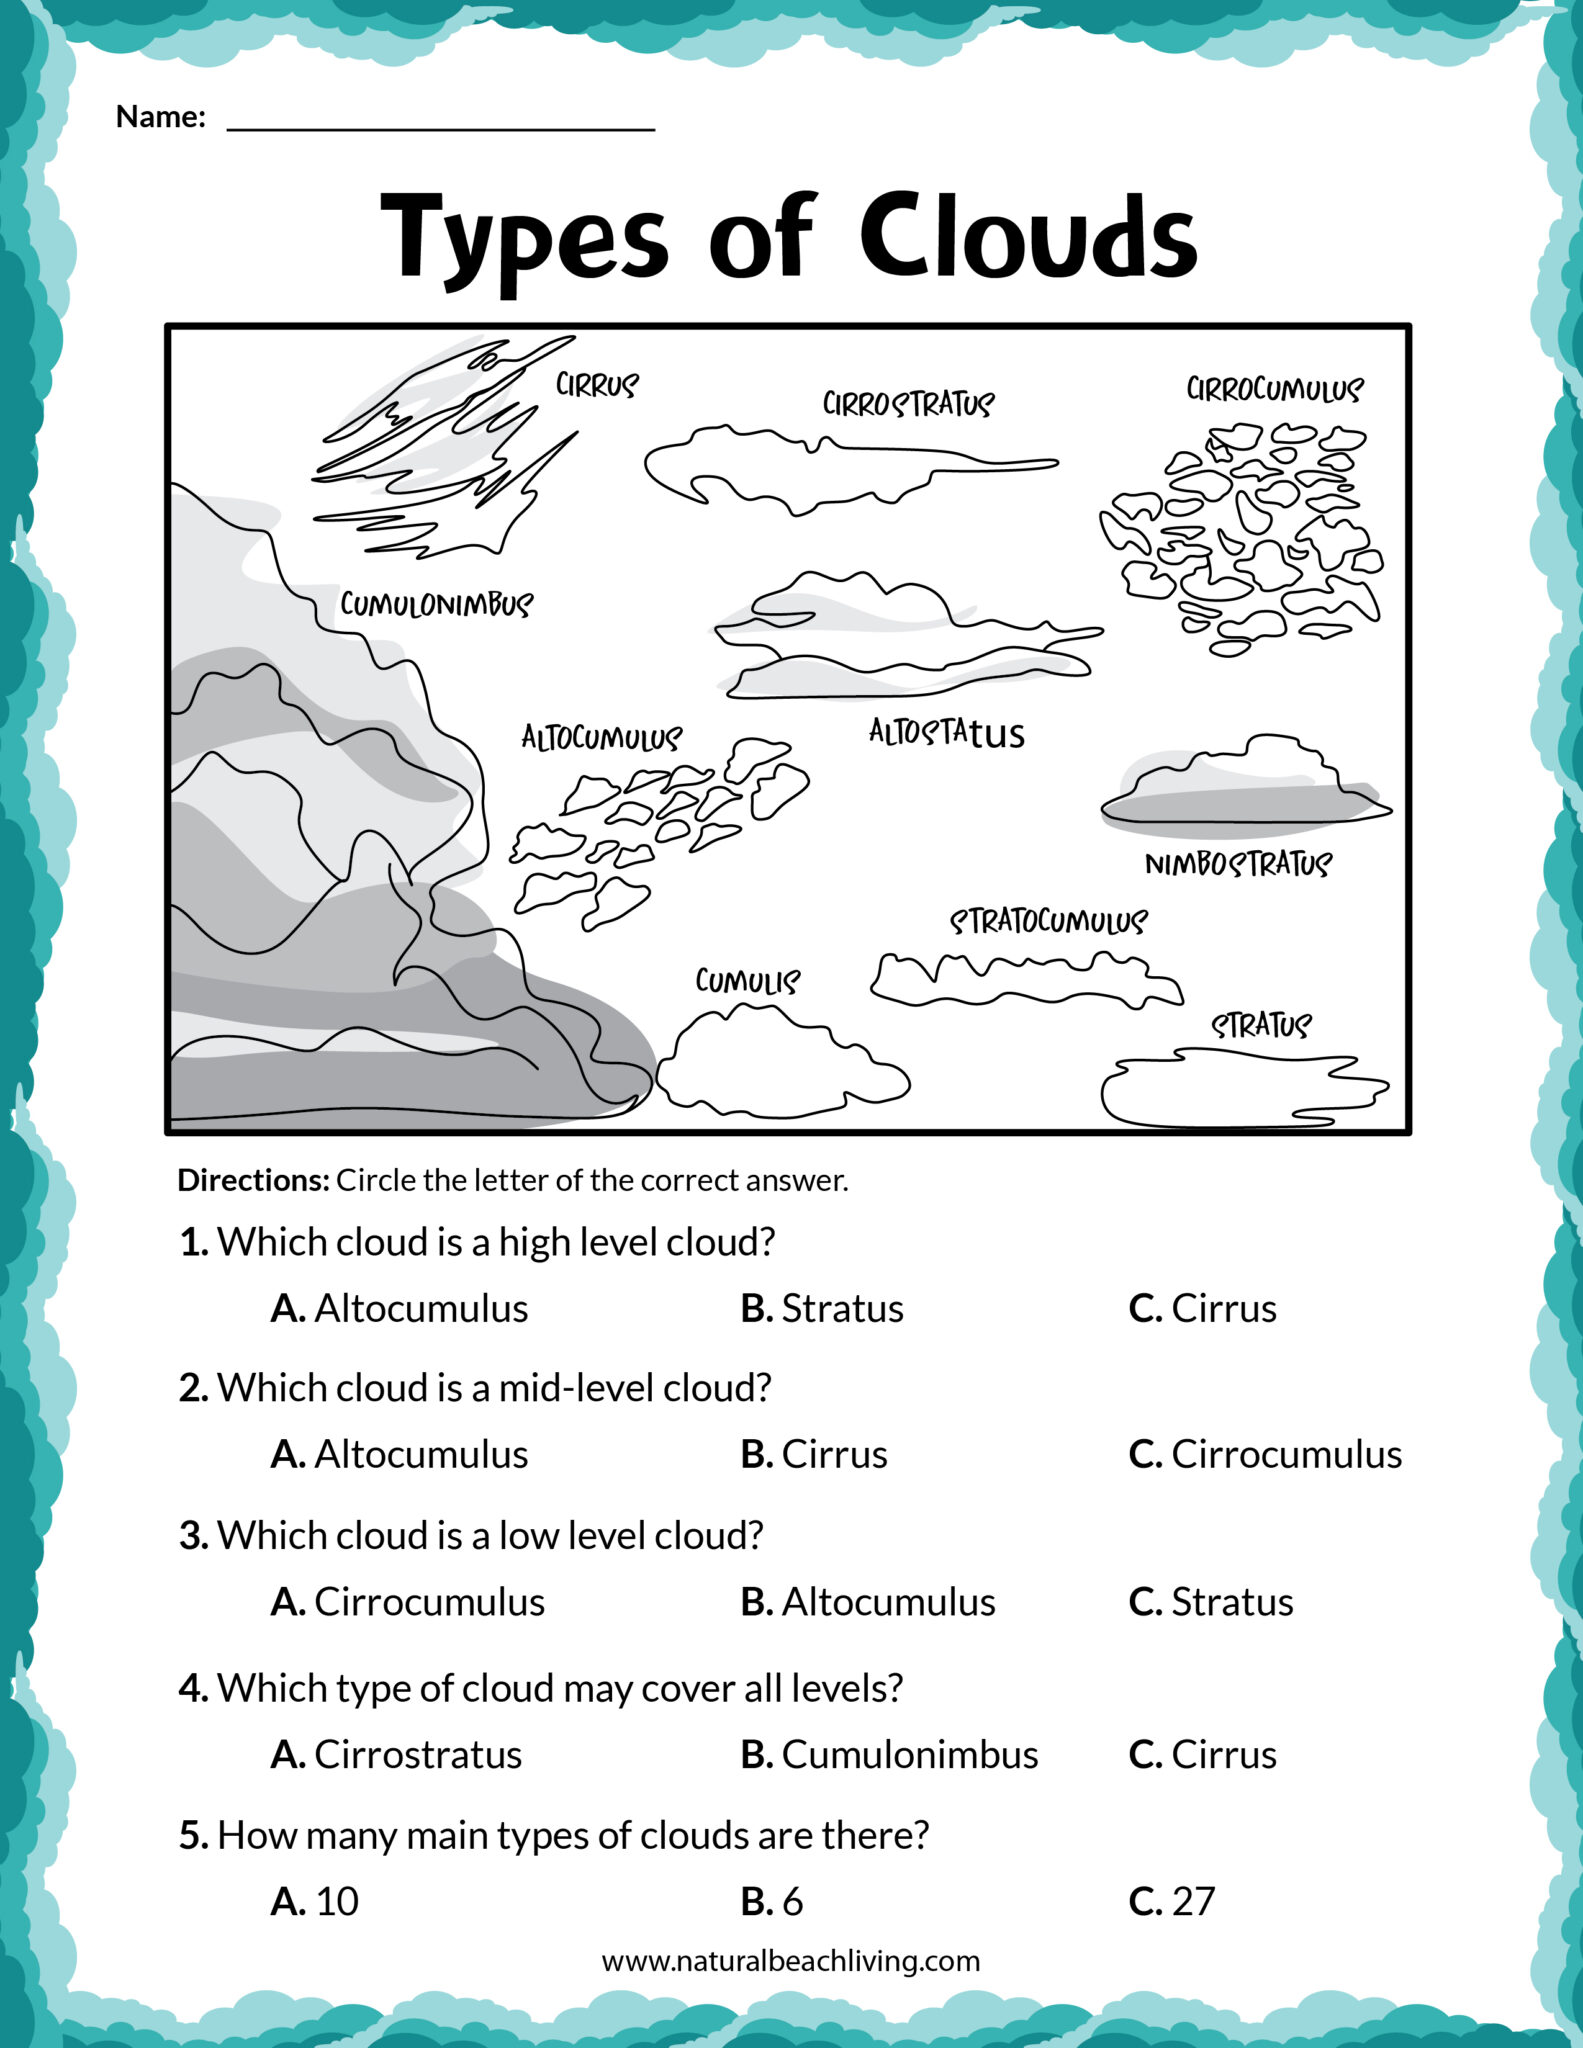 clouds-activities-for-kindergarten-and-types-of-clouds-activities